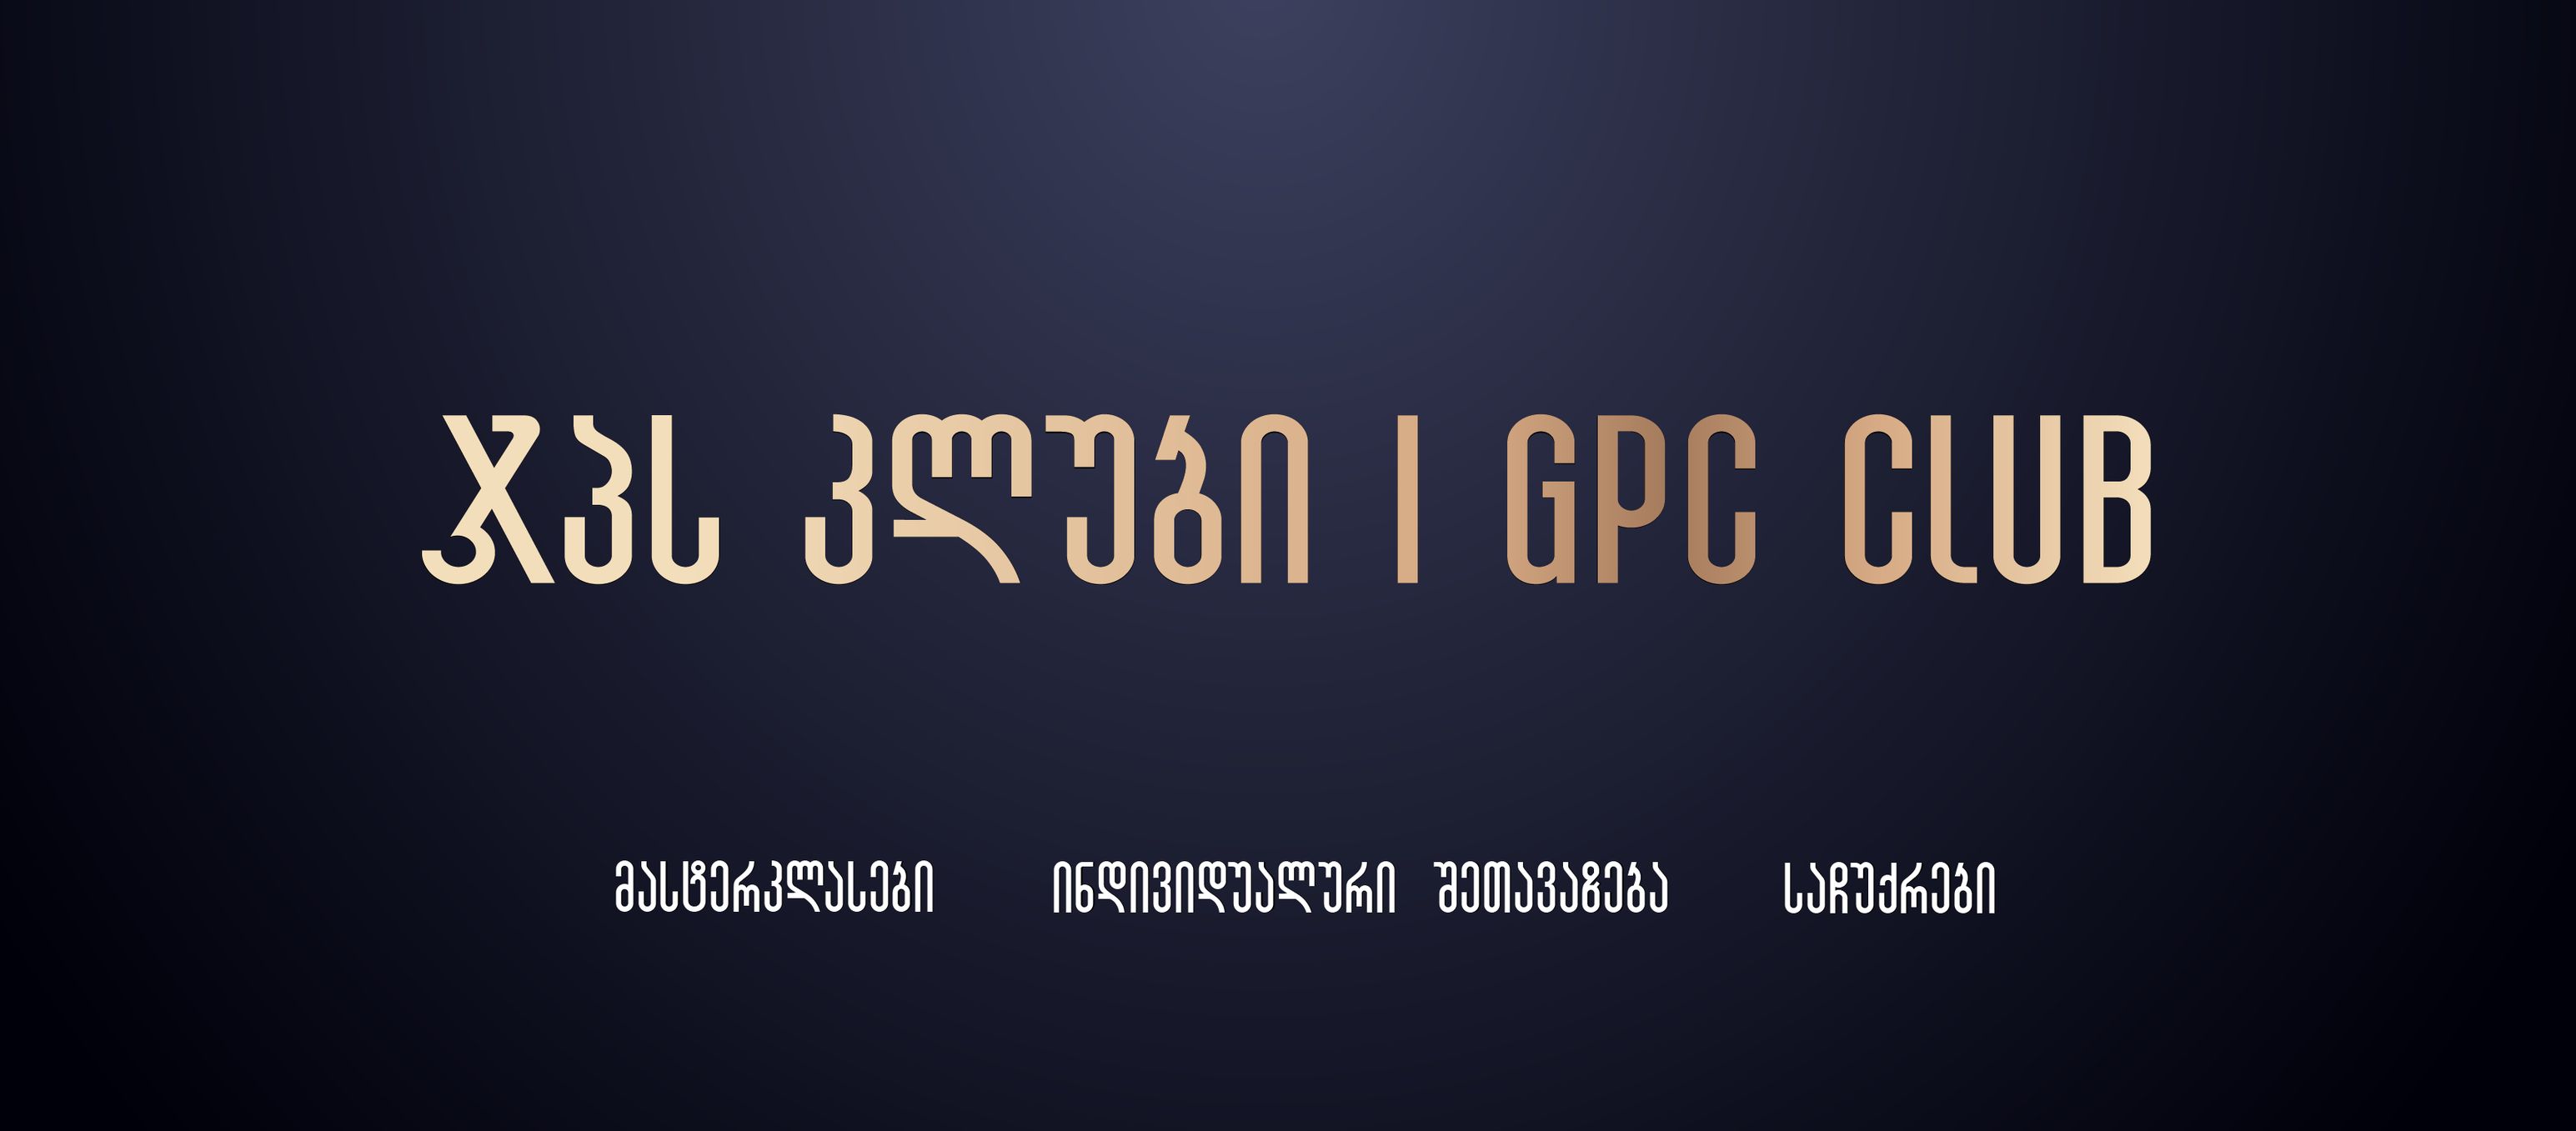 gpc club